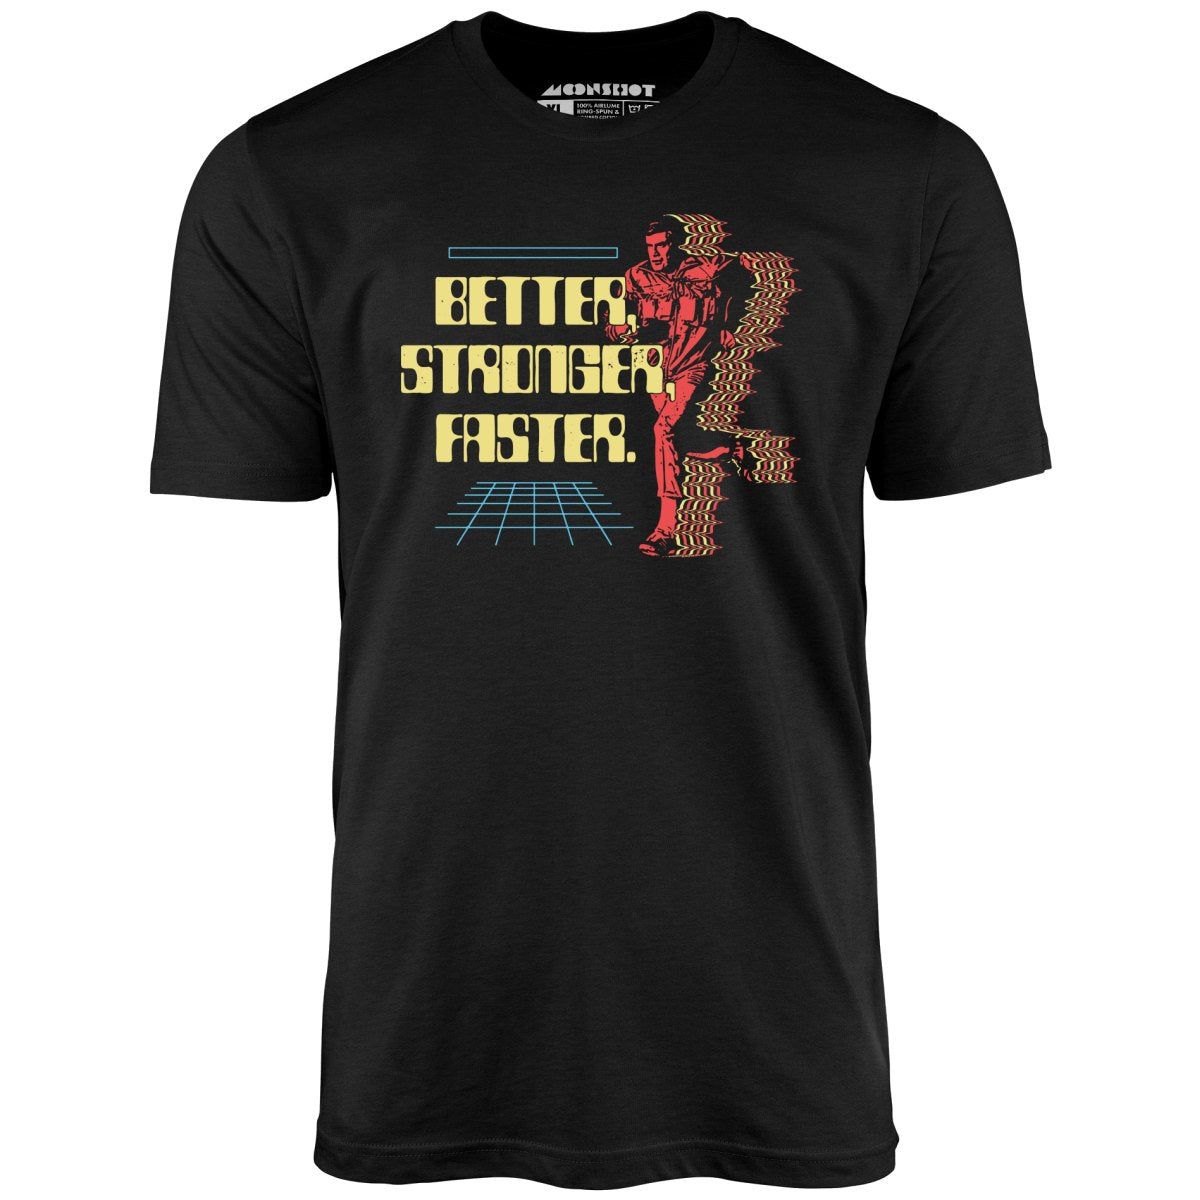 Better Stronger Faster - Unisex T-Shirt